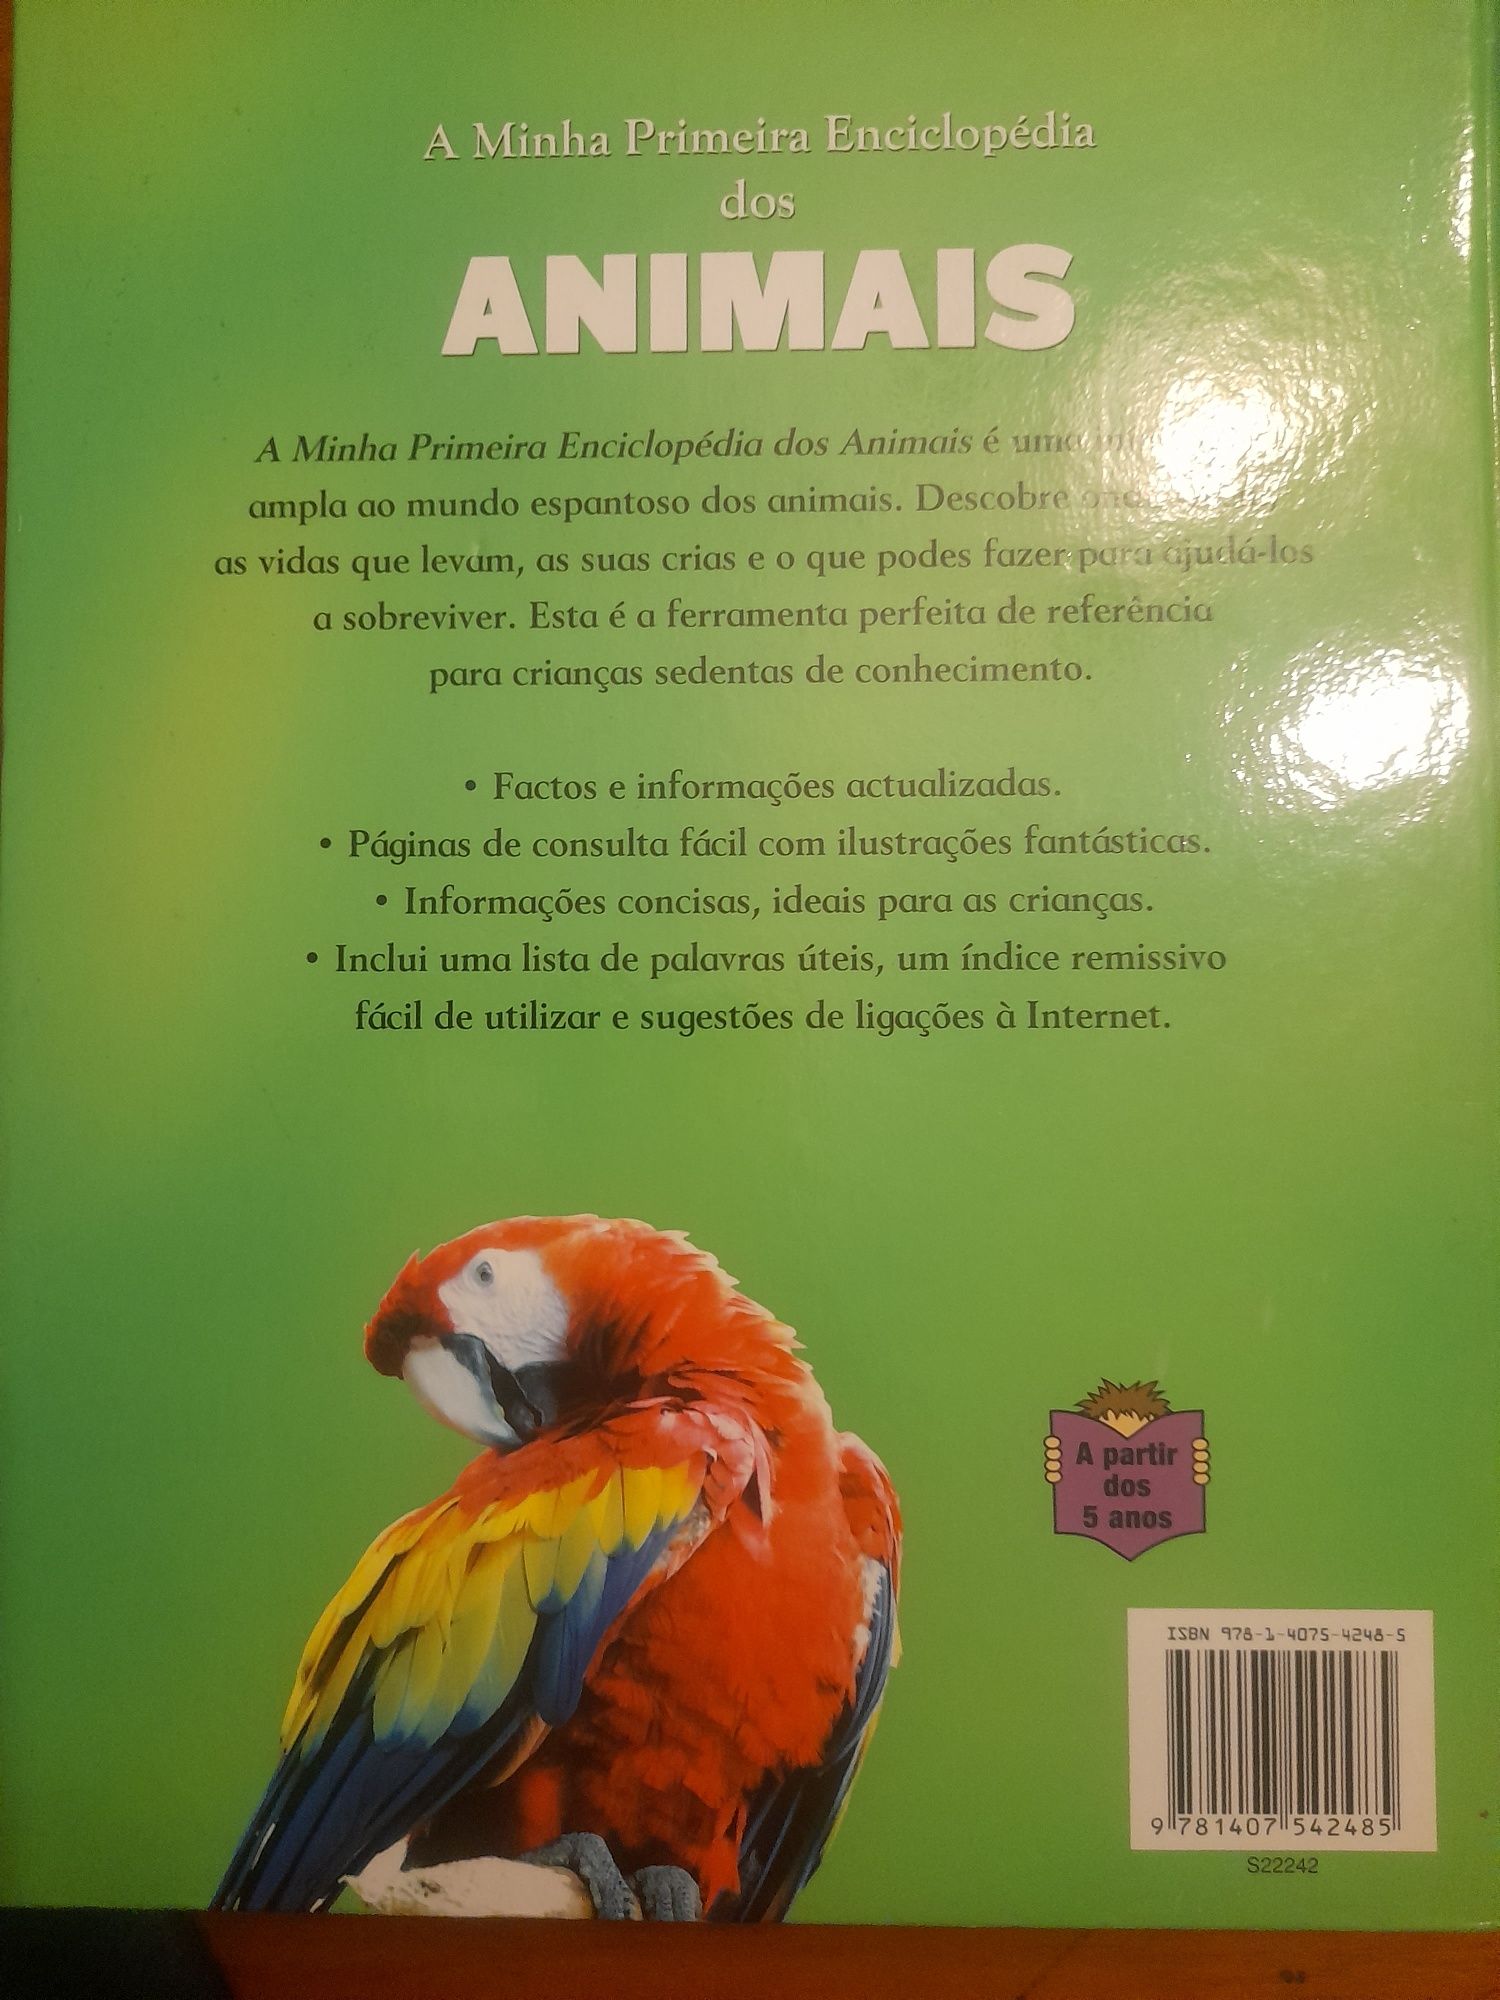 Livro "A minha primeira enciclopédia dos animais"